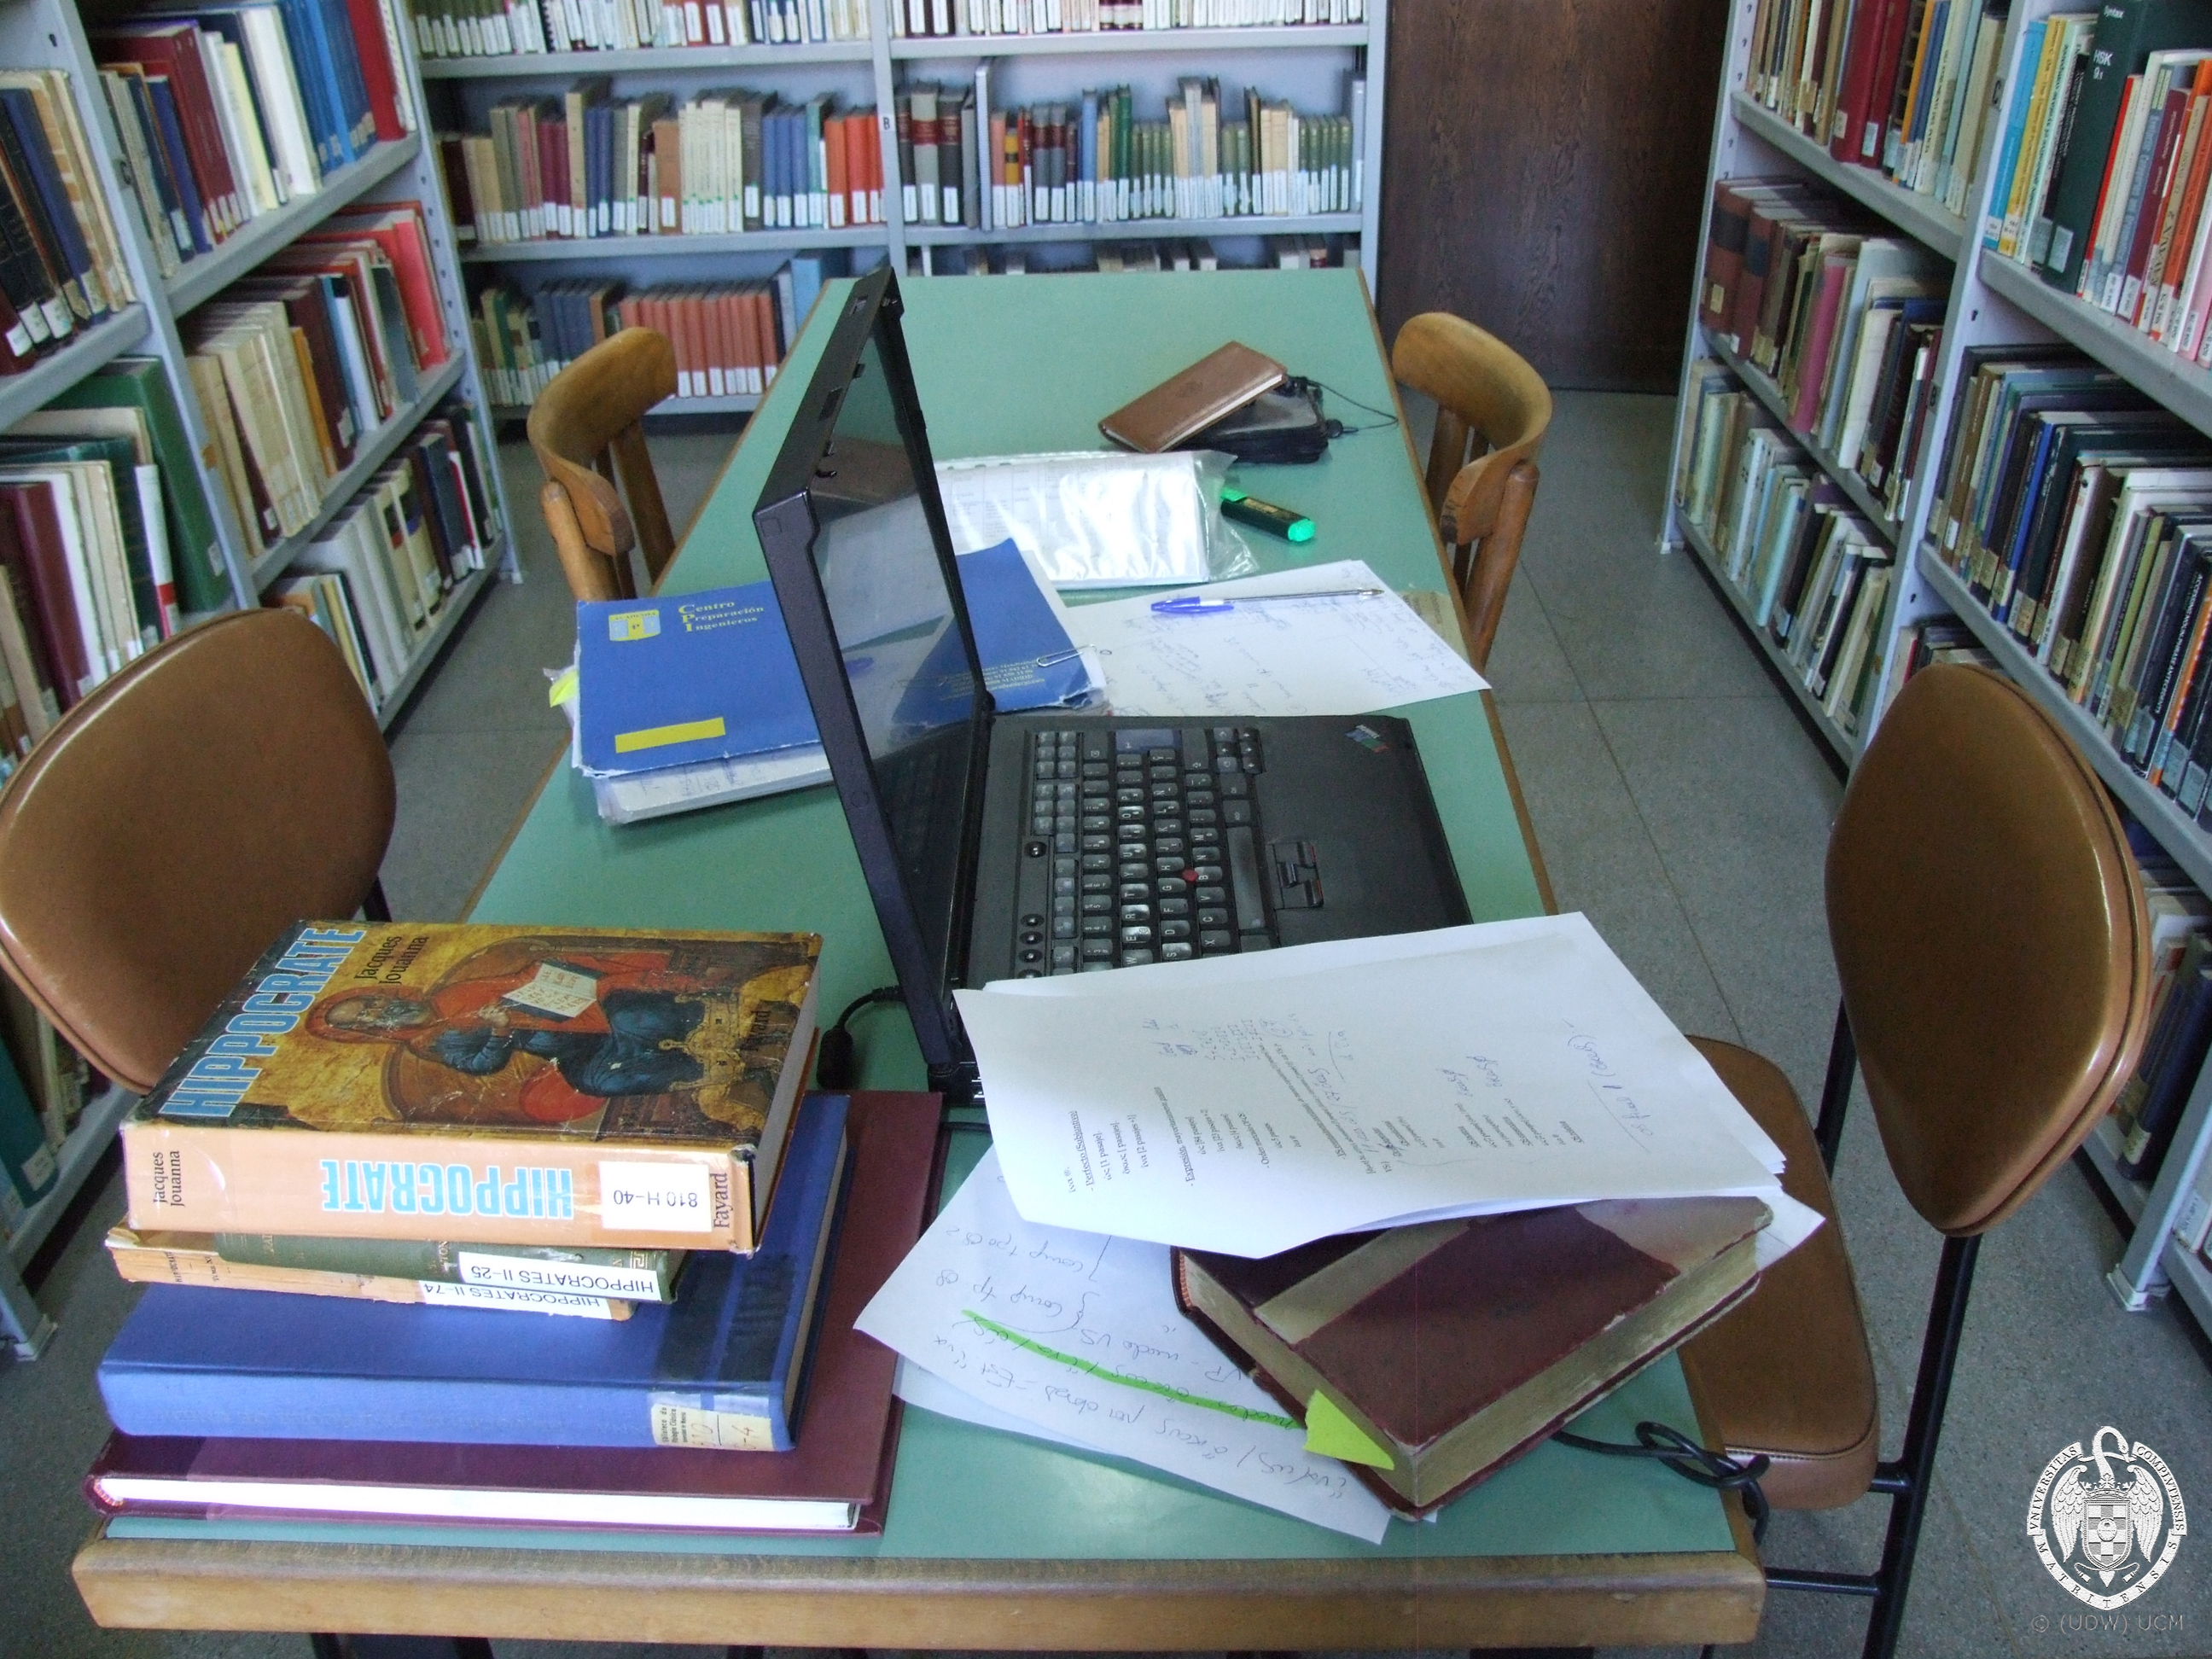 ordenador y libros en mesa de trabajo